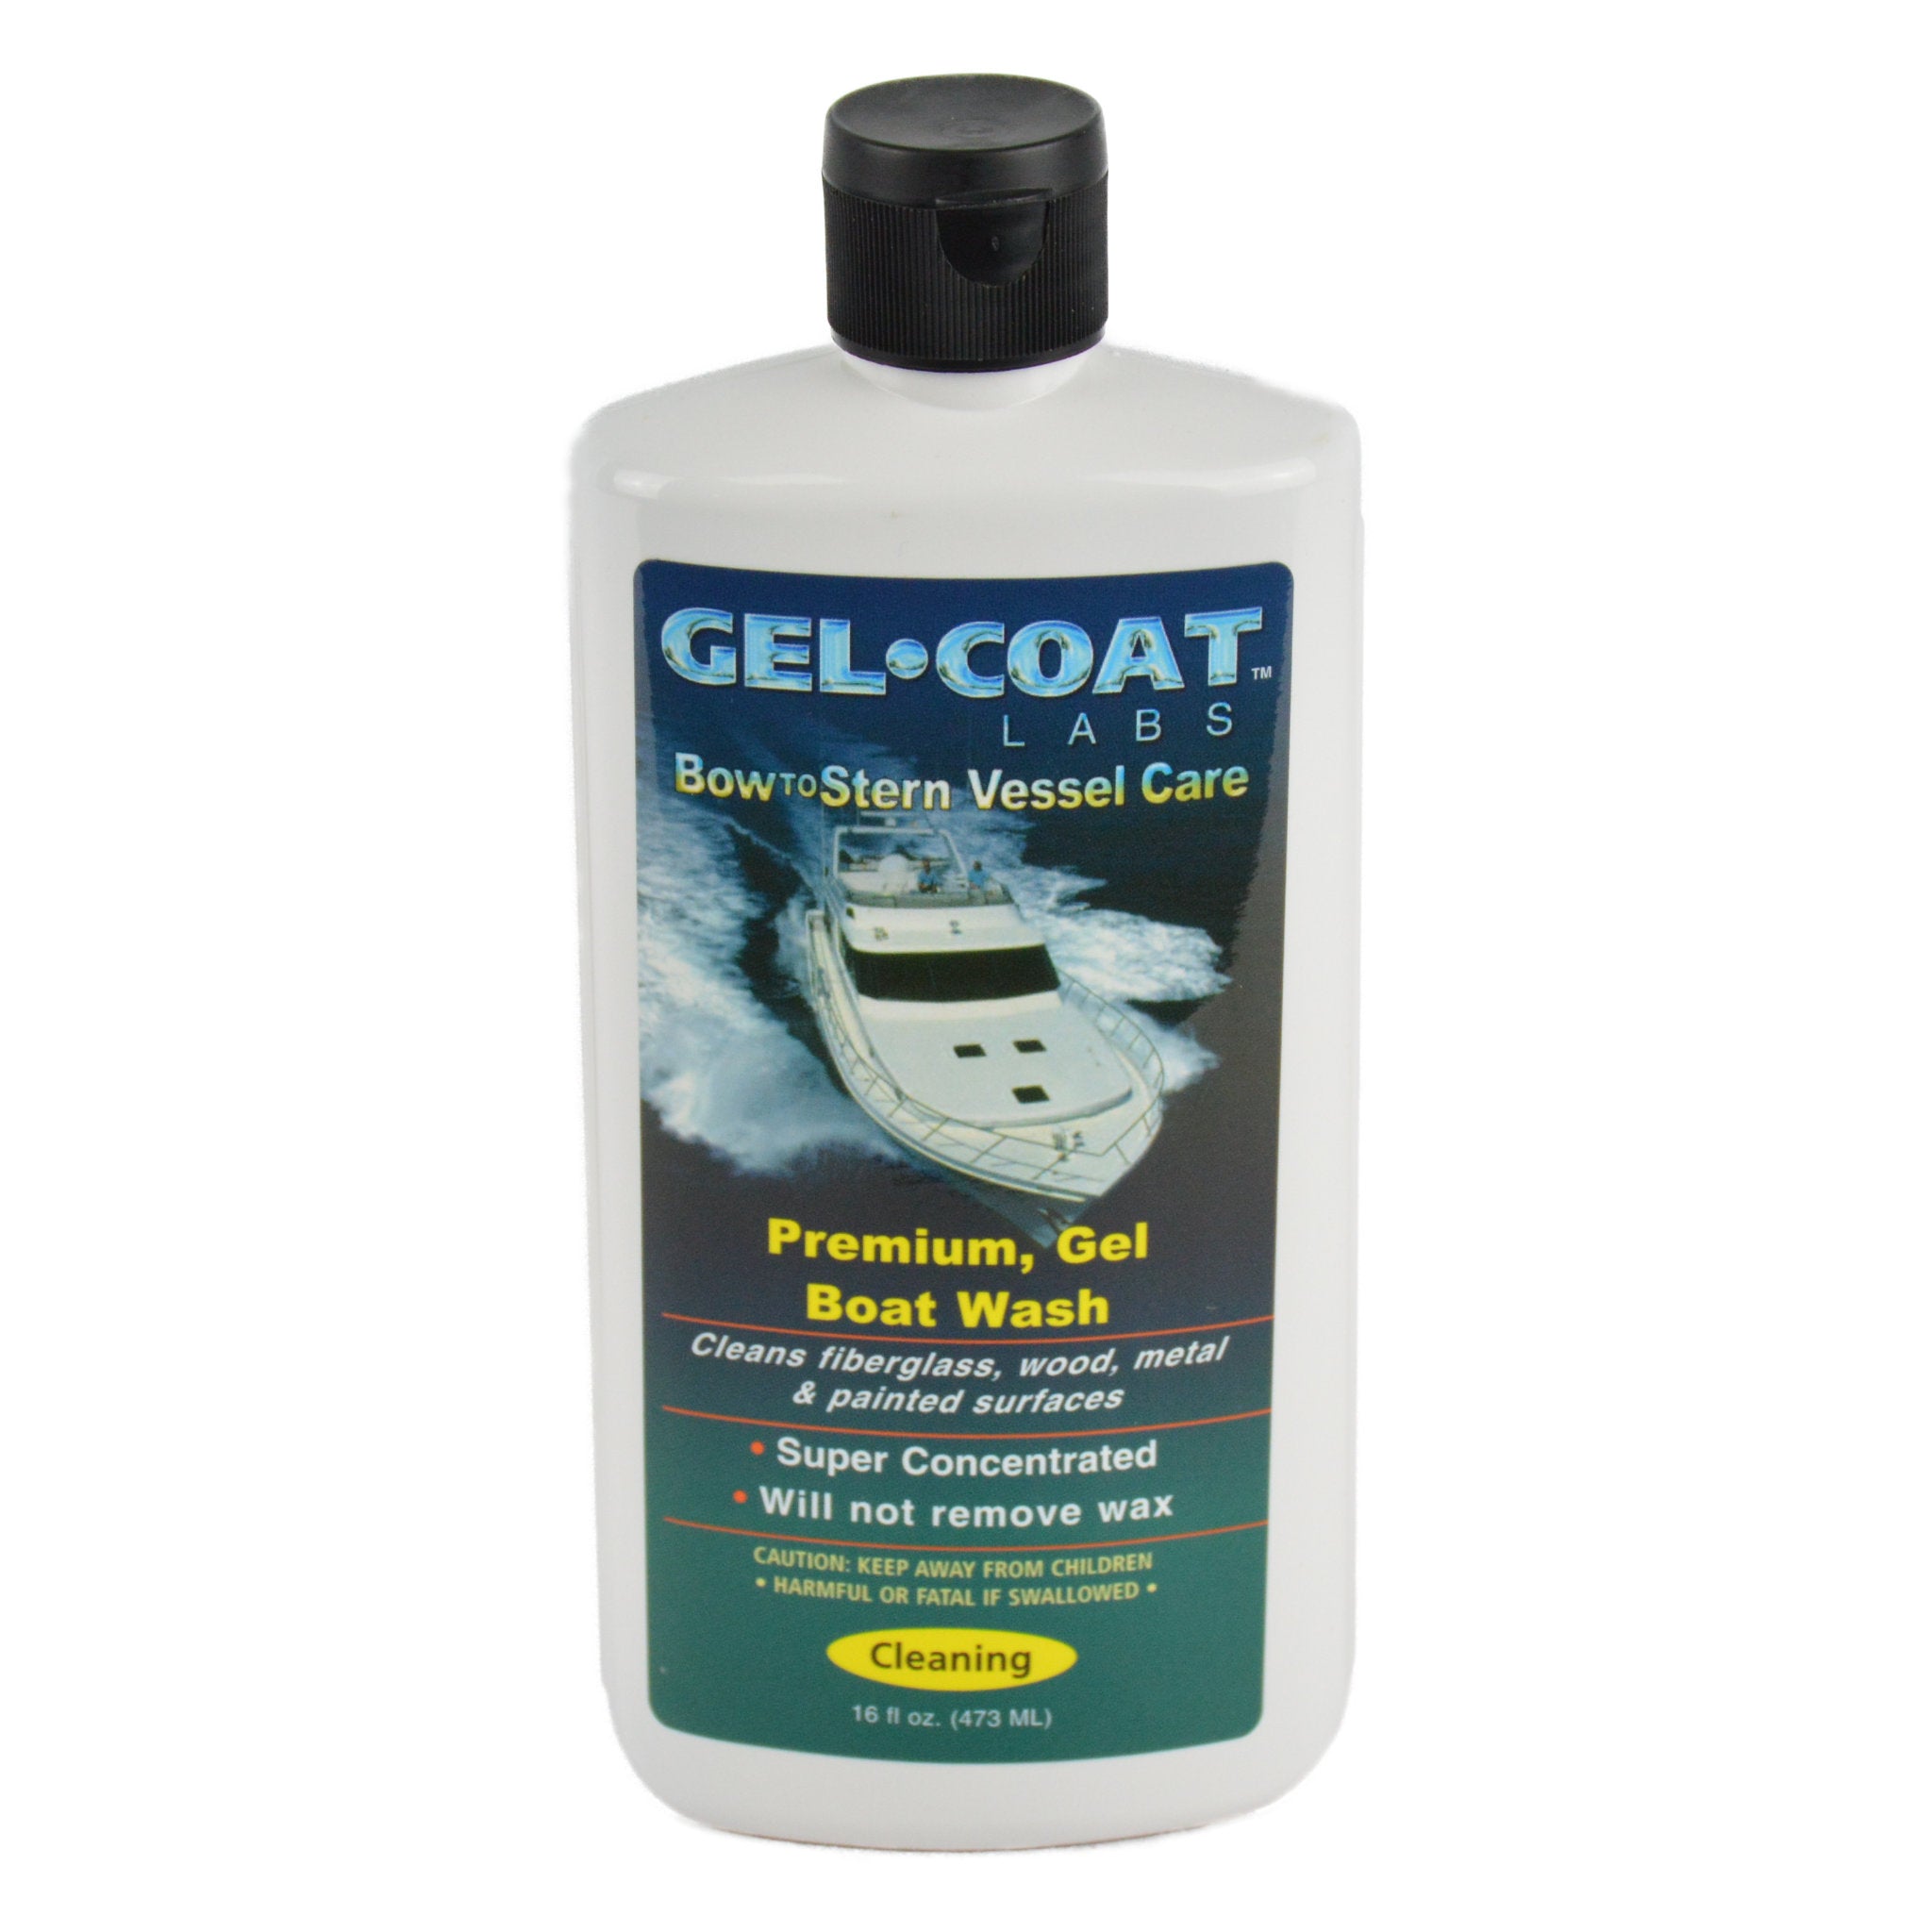 Marine 31 Gel Coat Carnauba Wax + Sealant, boat wax, marine